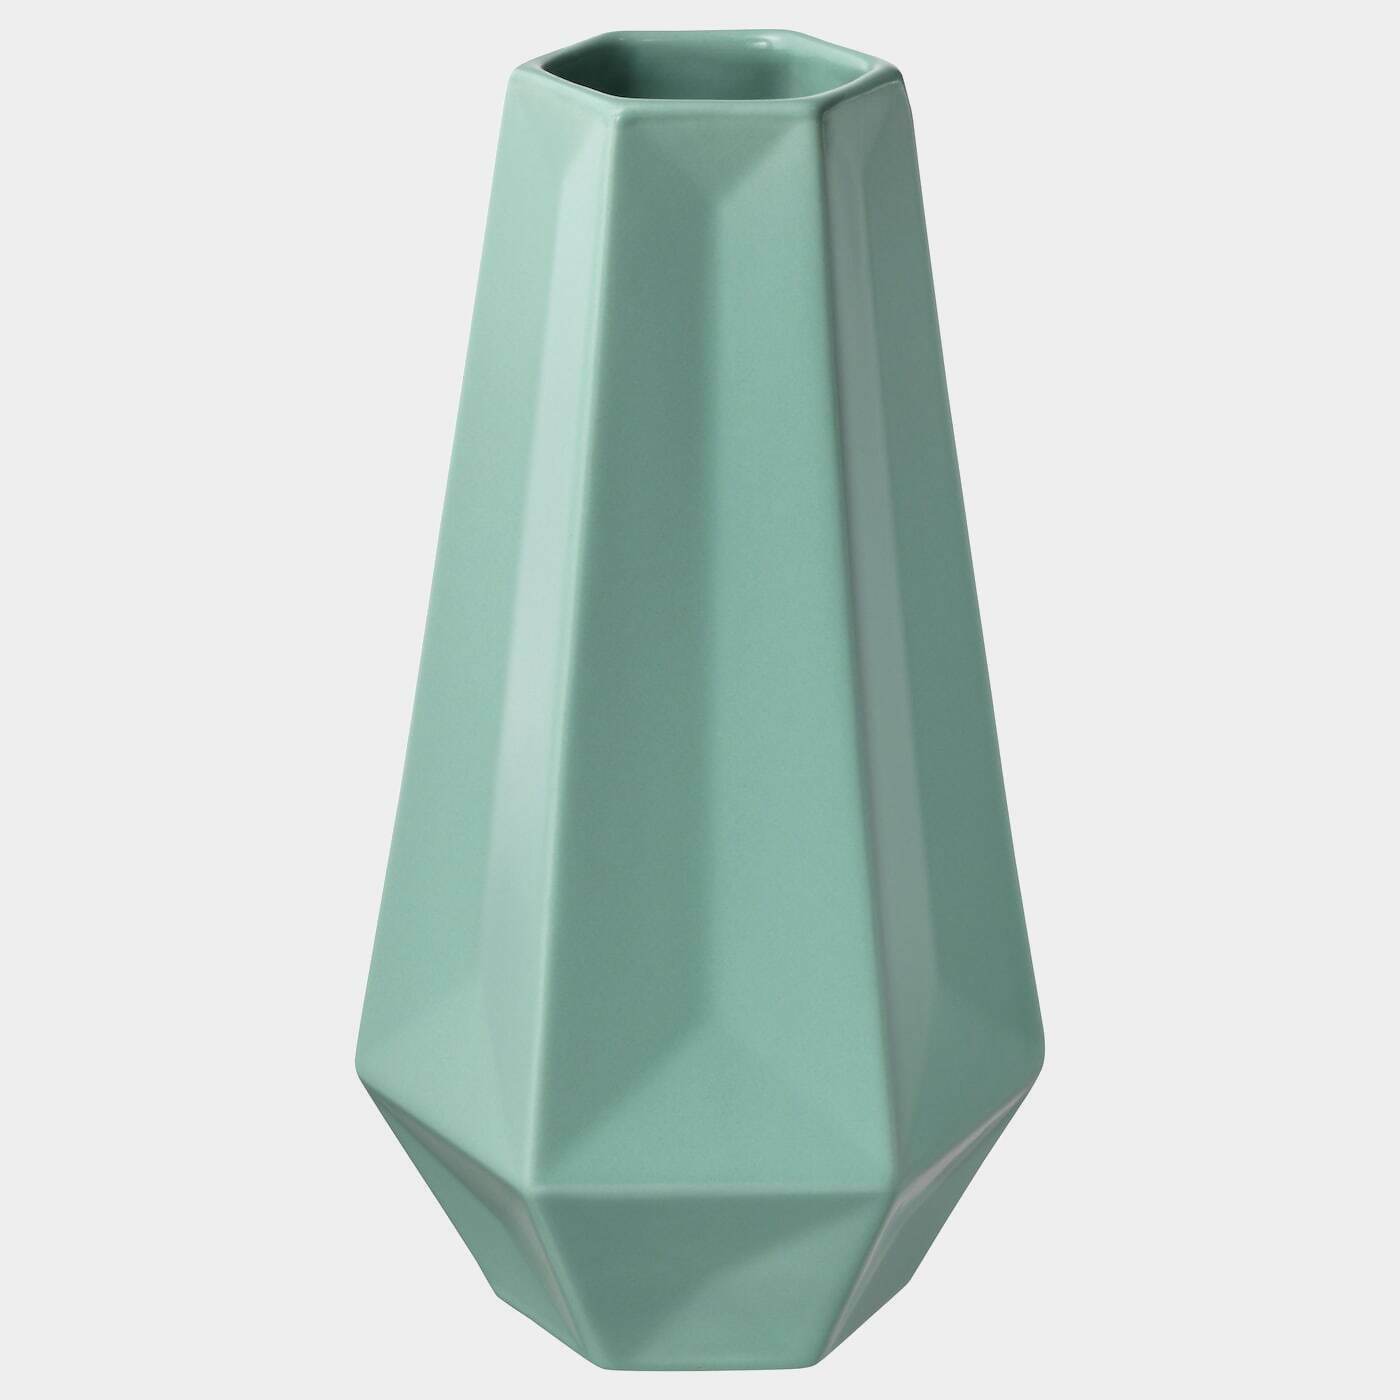 LIVSLÅNG Vase  - Vasen - Dekoration Ideen für dein Zuhause von Home Trends. Dekoration Trends von Social Media Influencer für dein Skandi Zuhause.